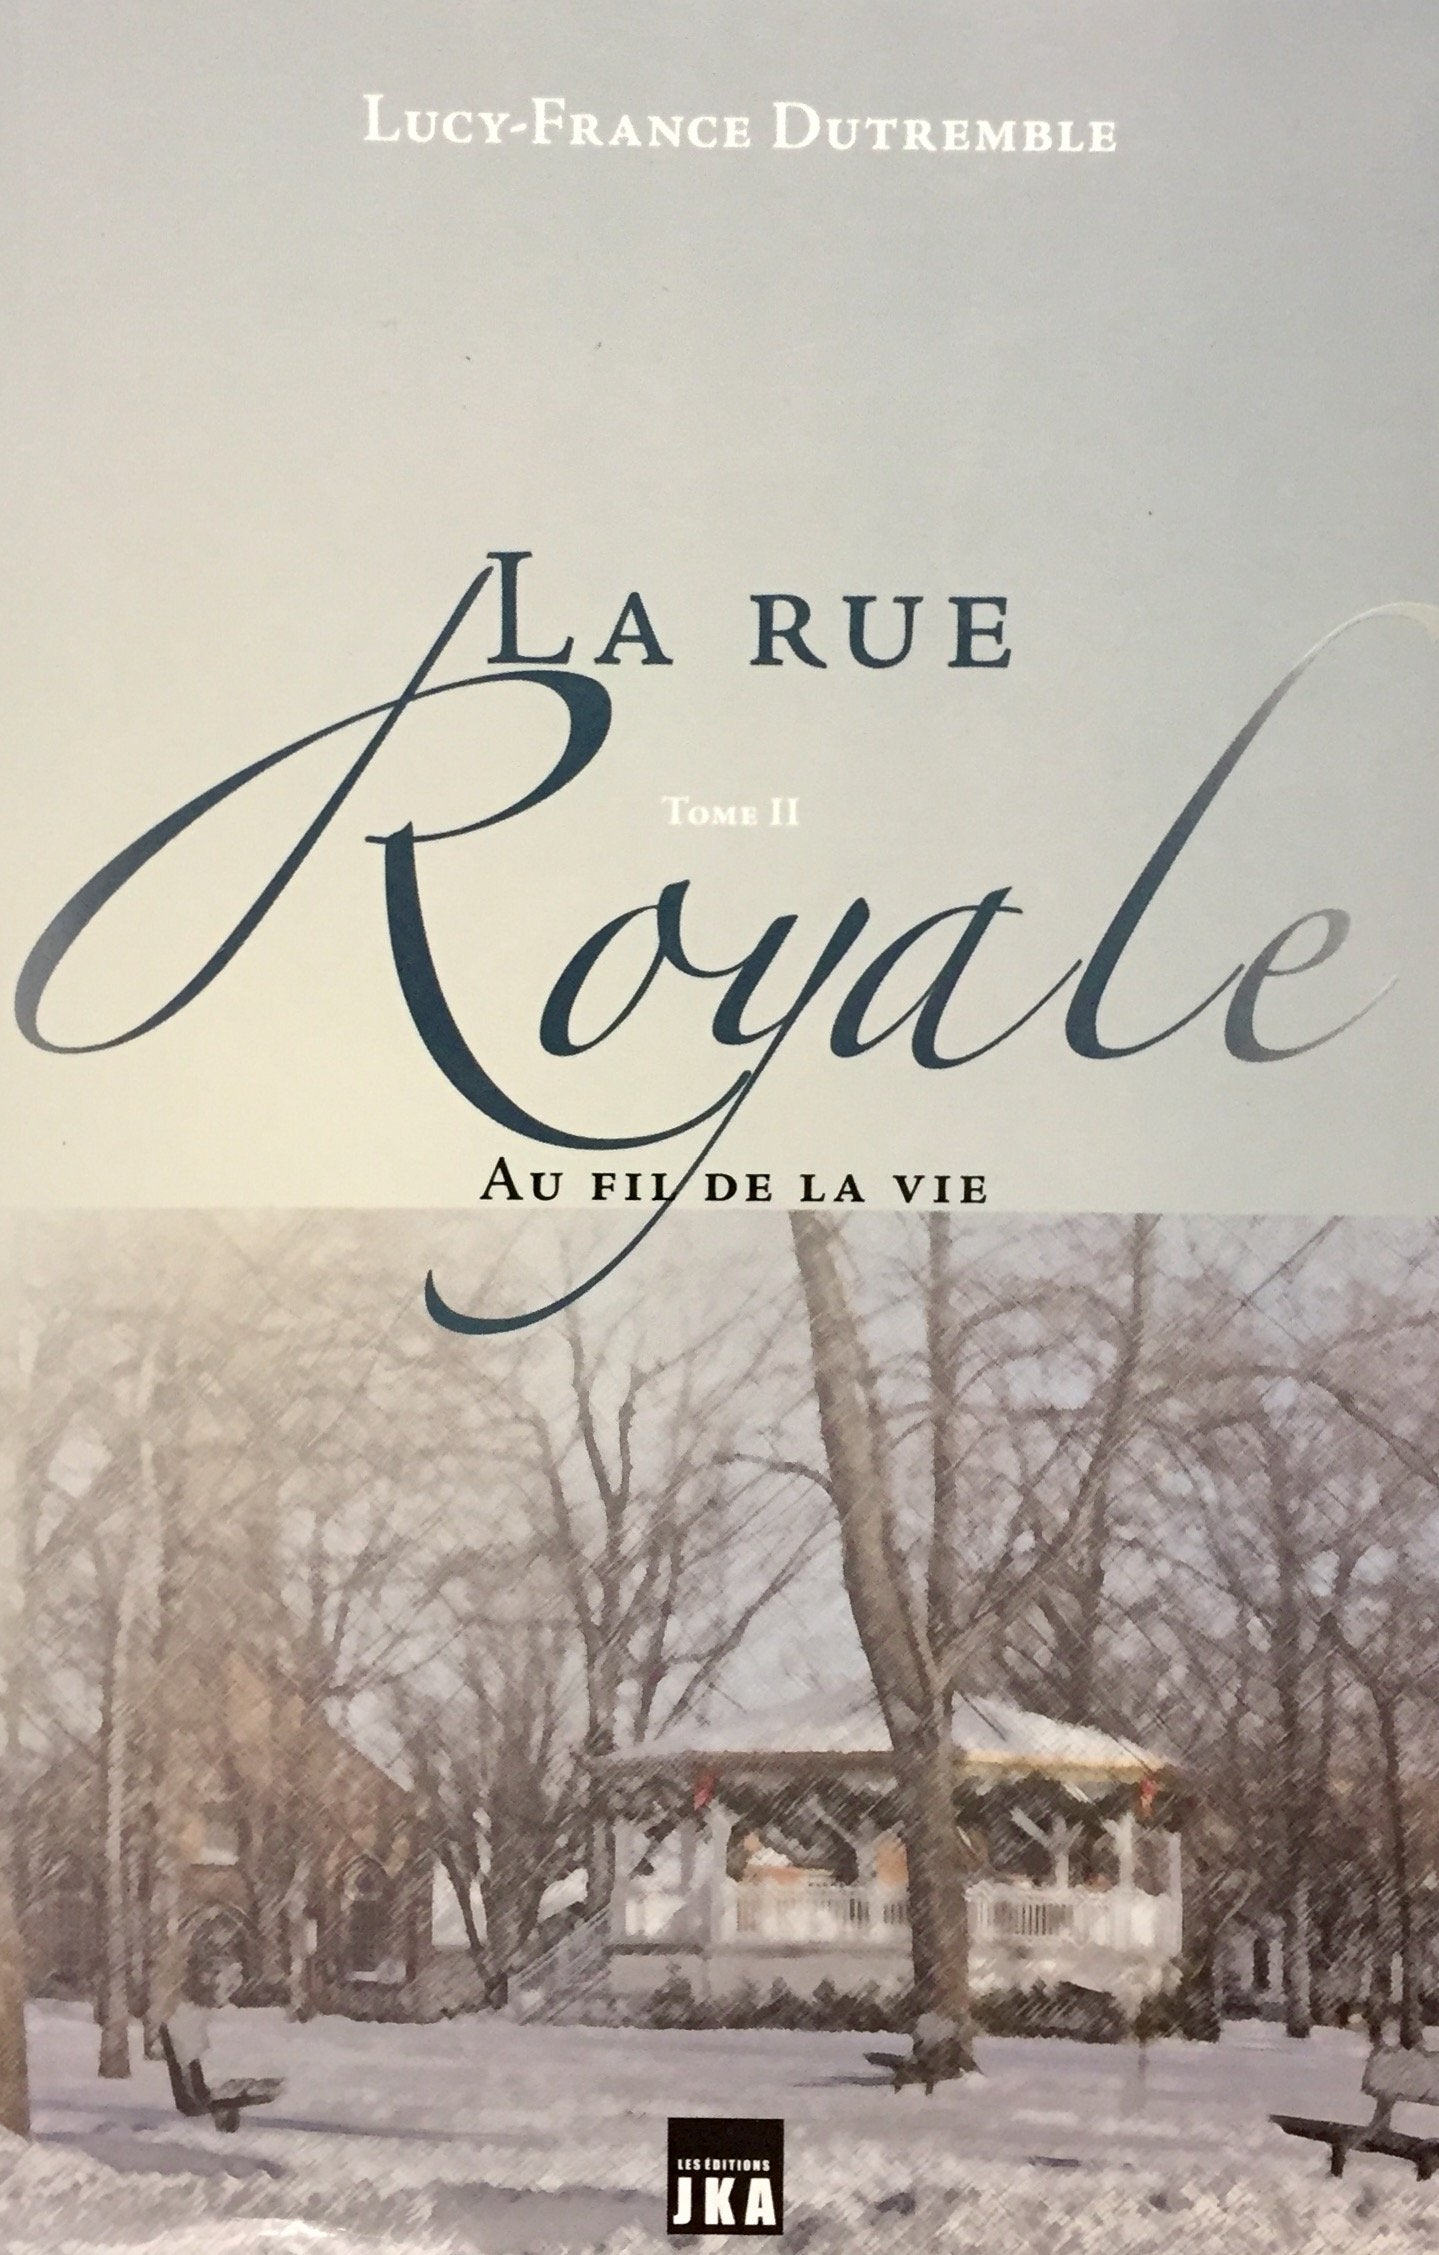 Livre ISBN 2923672372 La rue royale # 2 : Au fil de la vie (Lucy-France Dutremble)